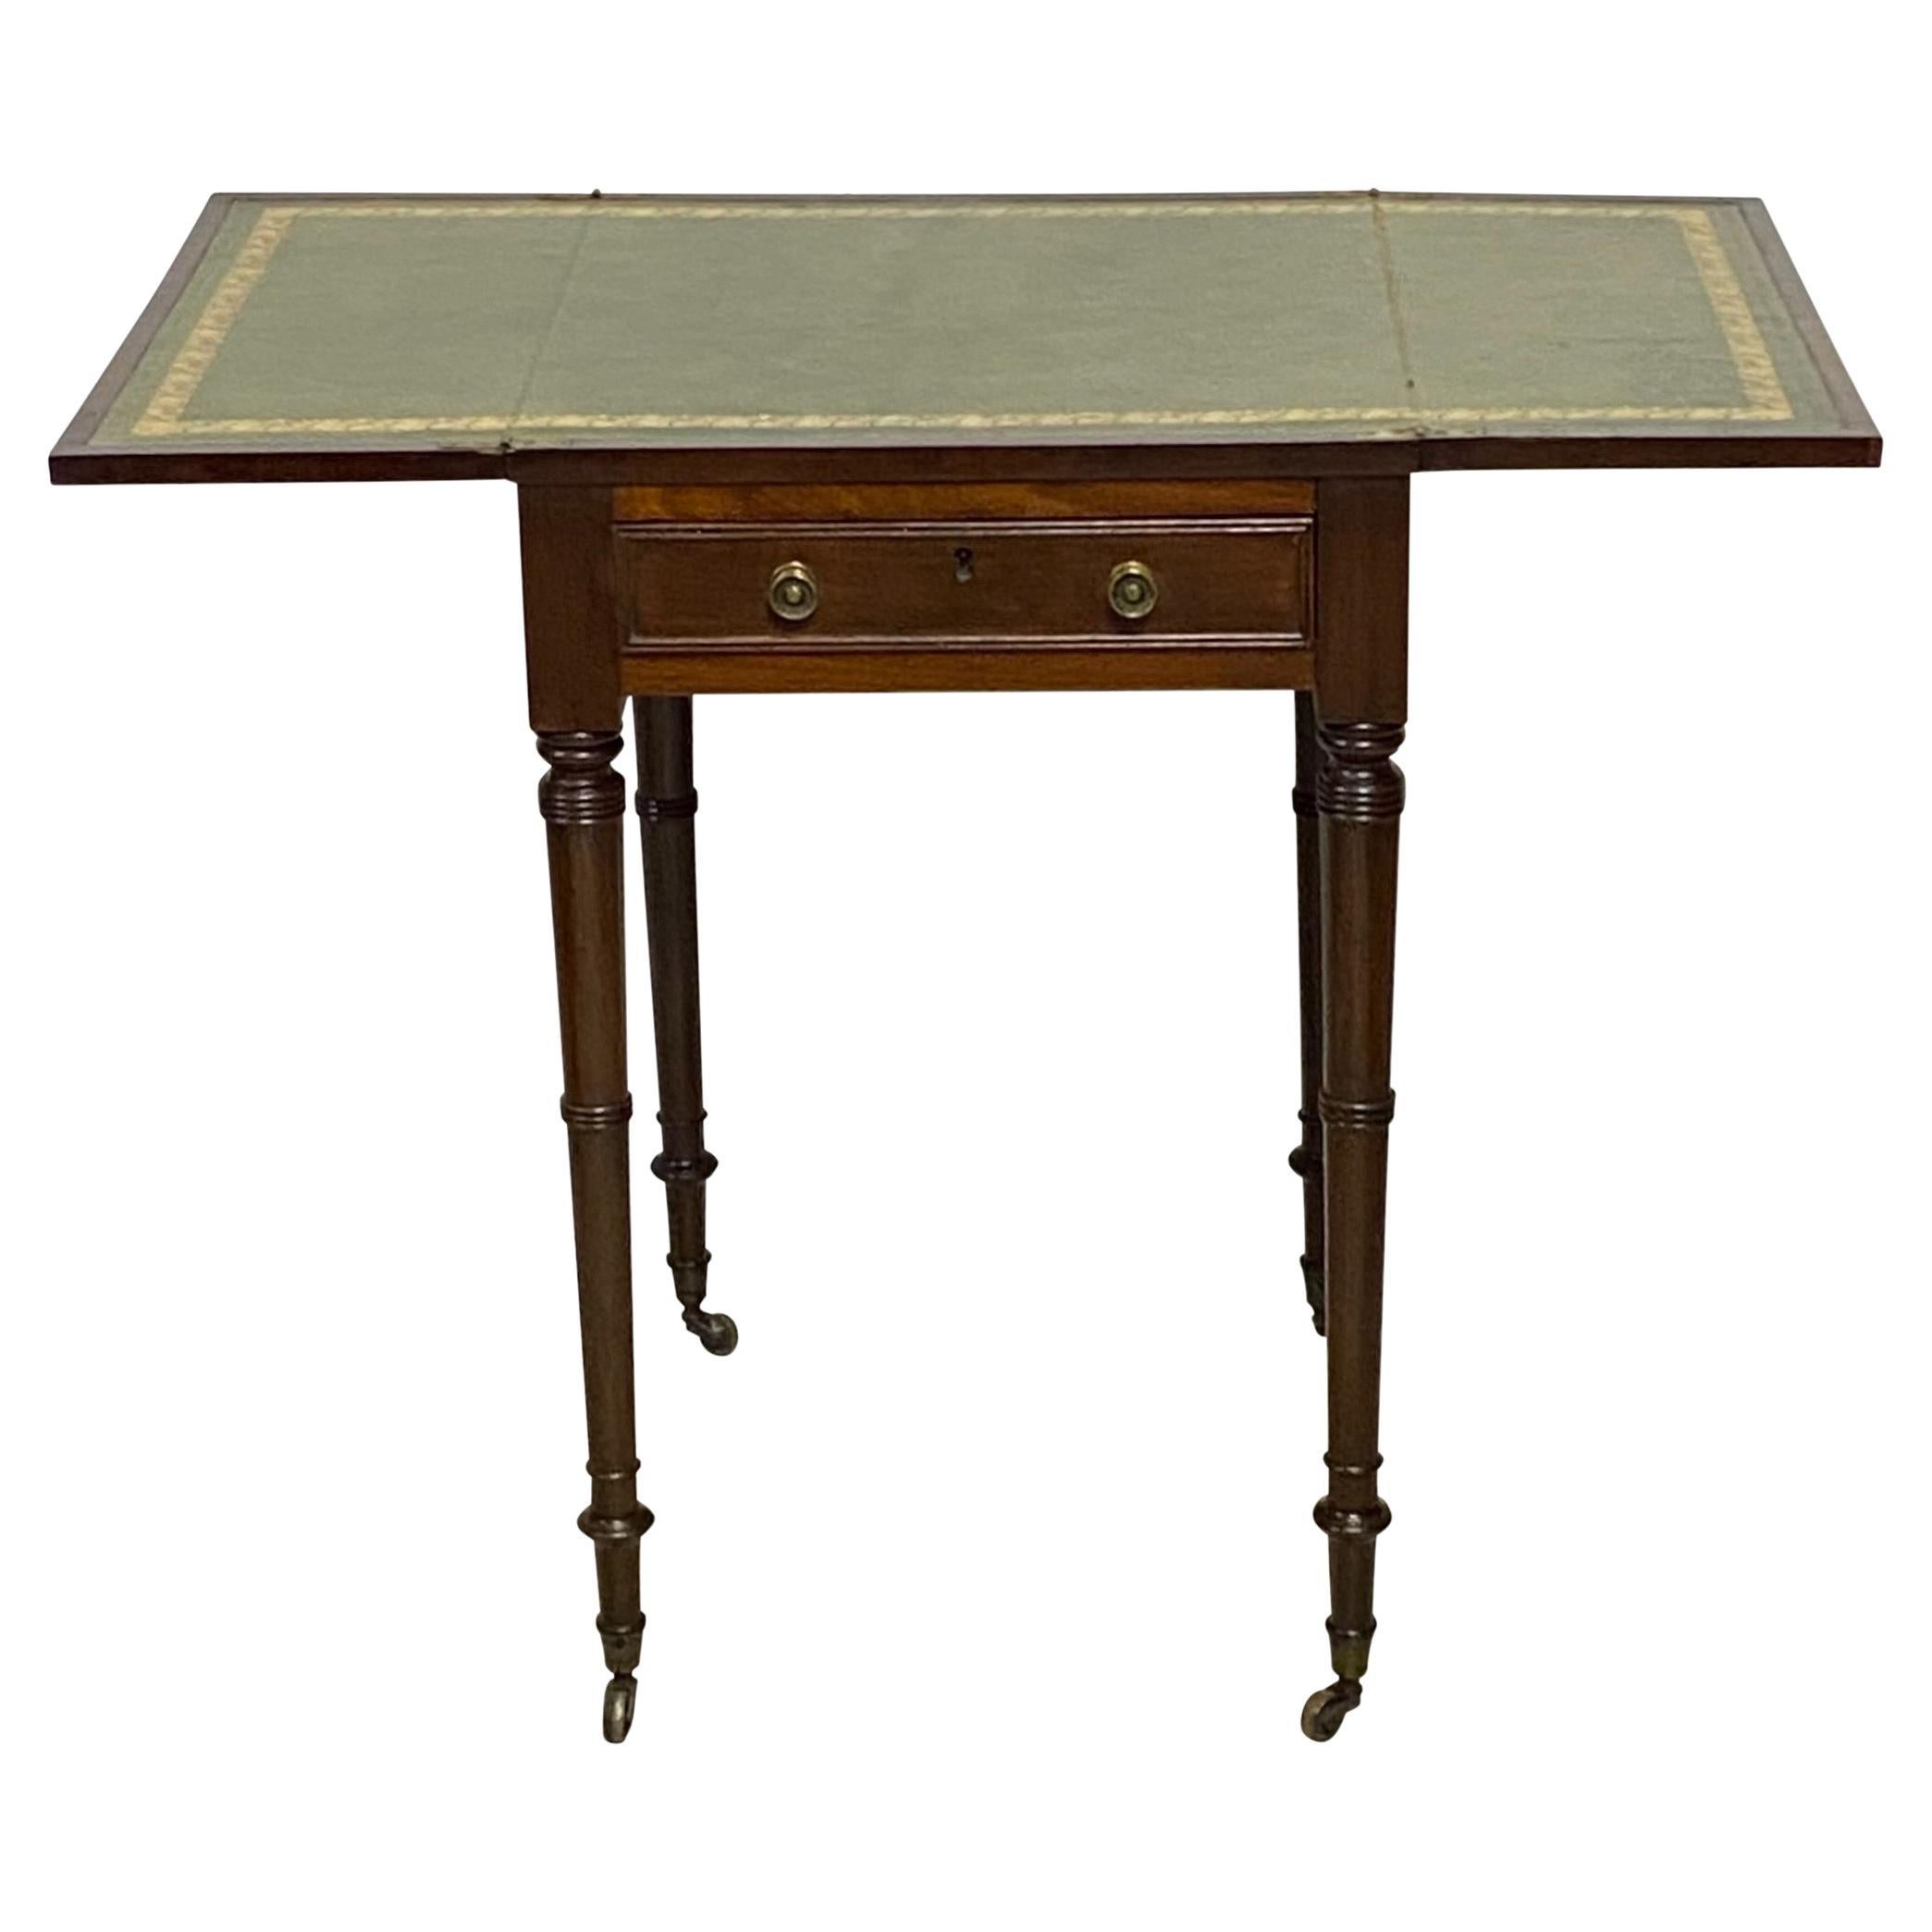 Table d'appoint Regency en acajou et cuir, anglais début du 19ème siècle